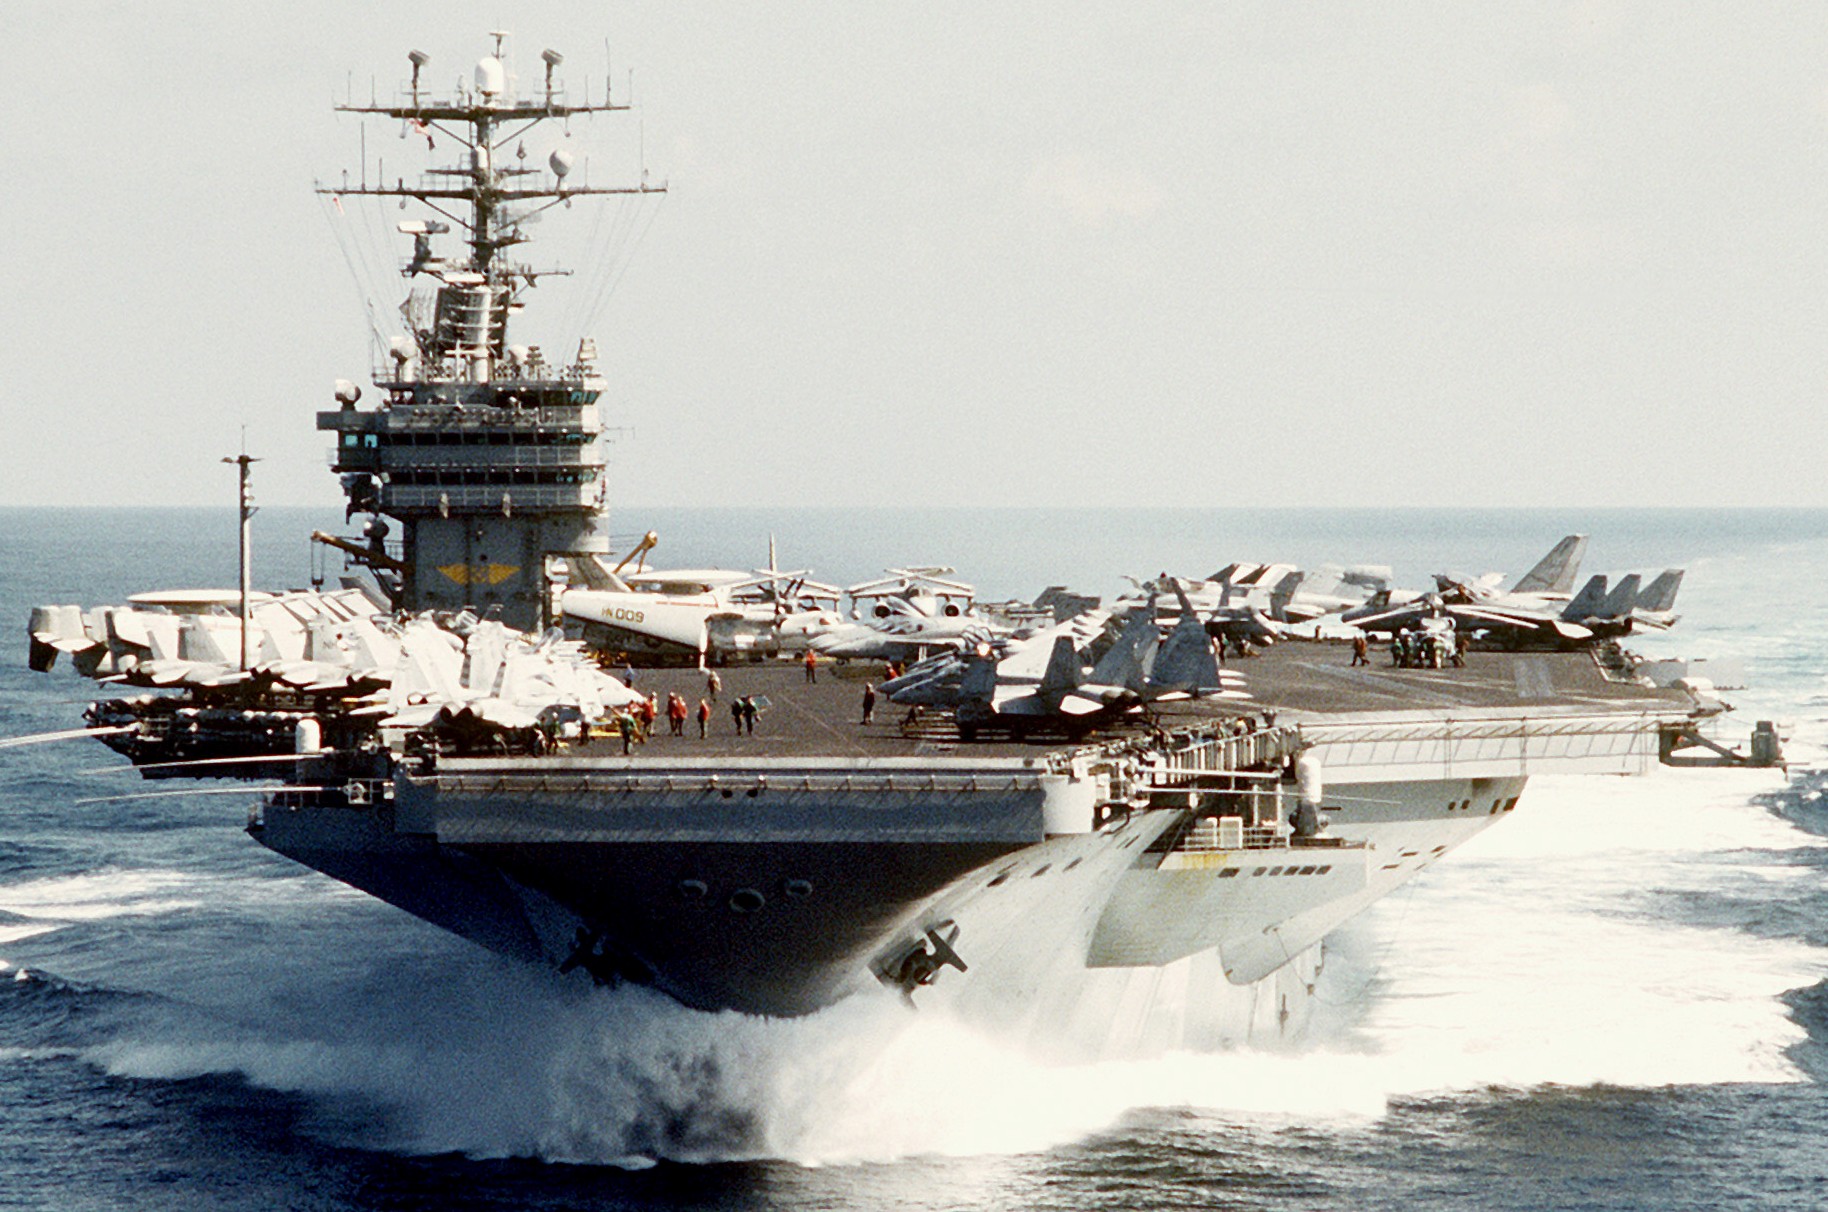 cvn-72 uss abraham lincoln nimitz class aircraft carrier air wing cvw-11 us navy pacific ocean 183